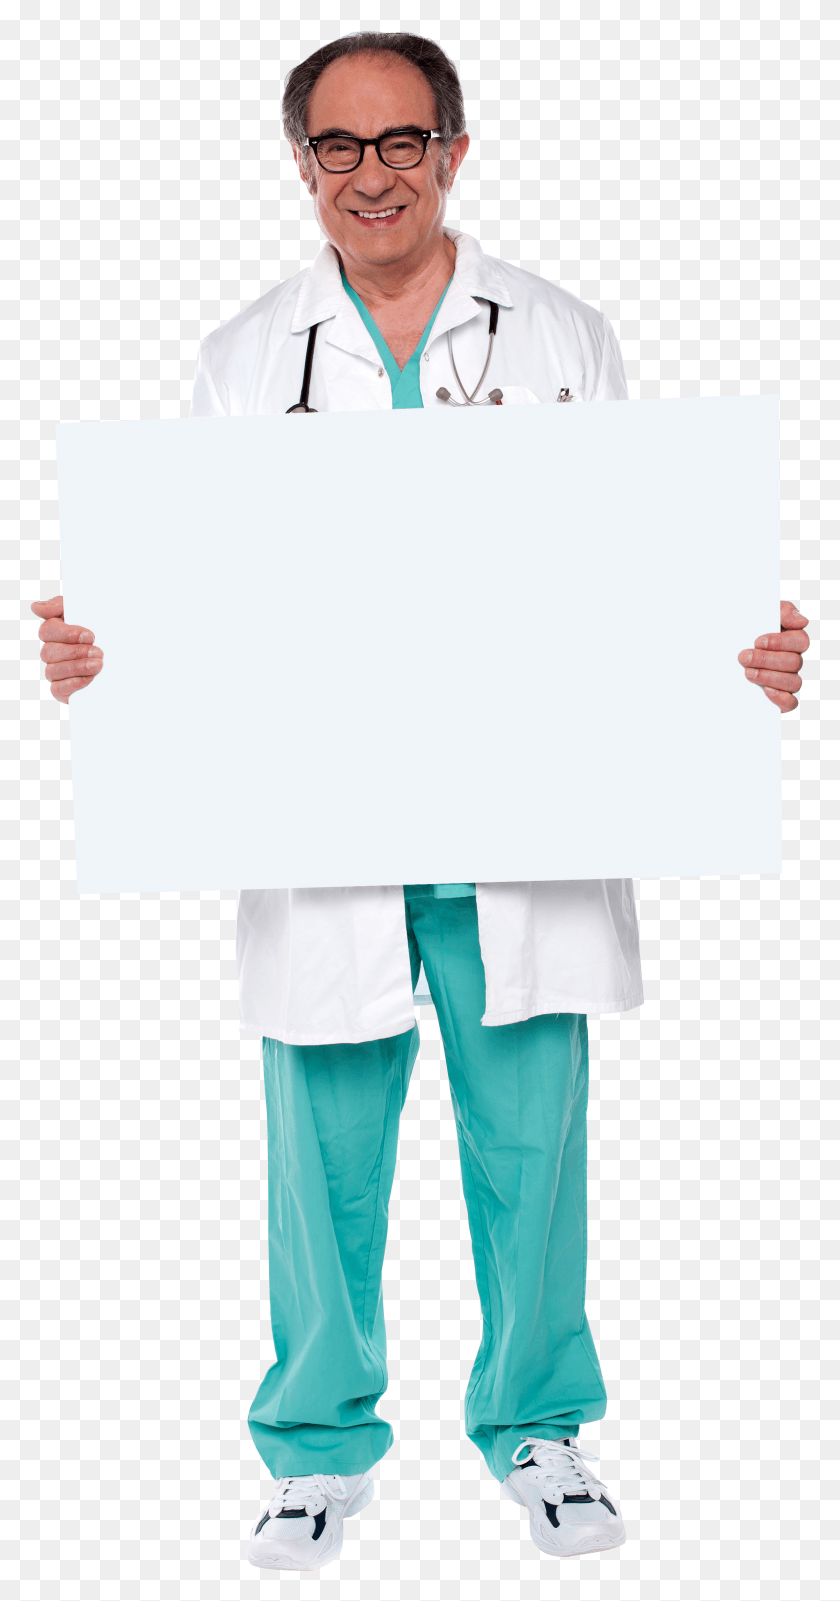 2235x4417 Doctor Holding Banner Manipulación De Cuello Quiropráctica Y Accidente Cerebrovascular, Persona, Humano, Tablero Blanco Hd Png